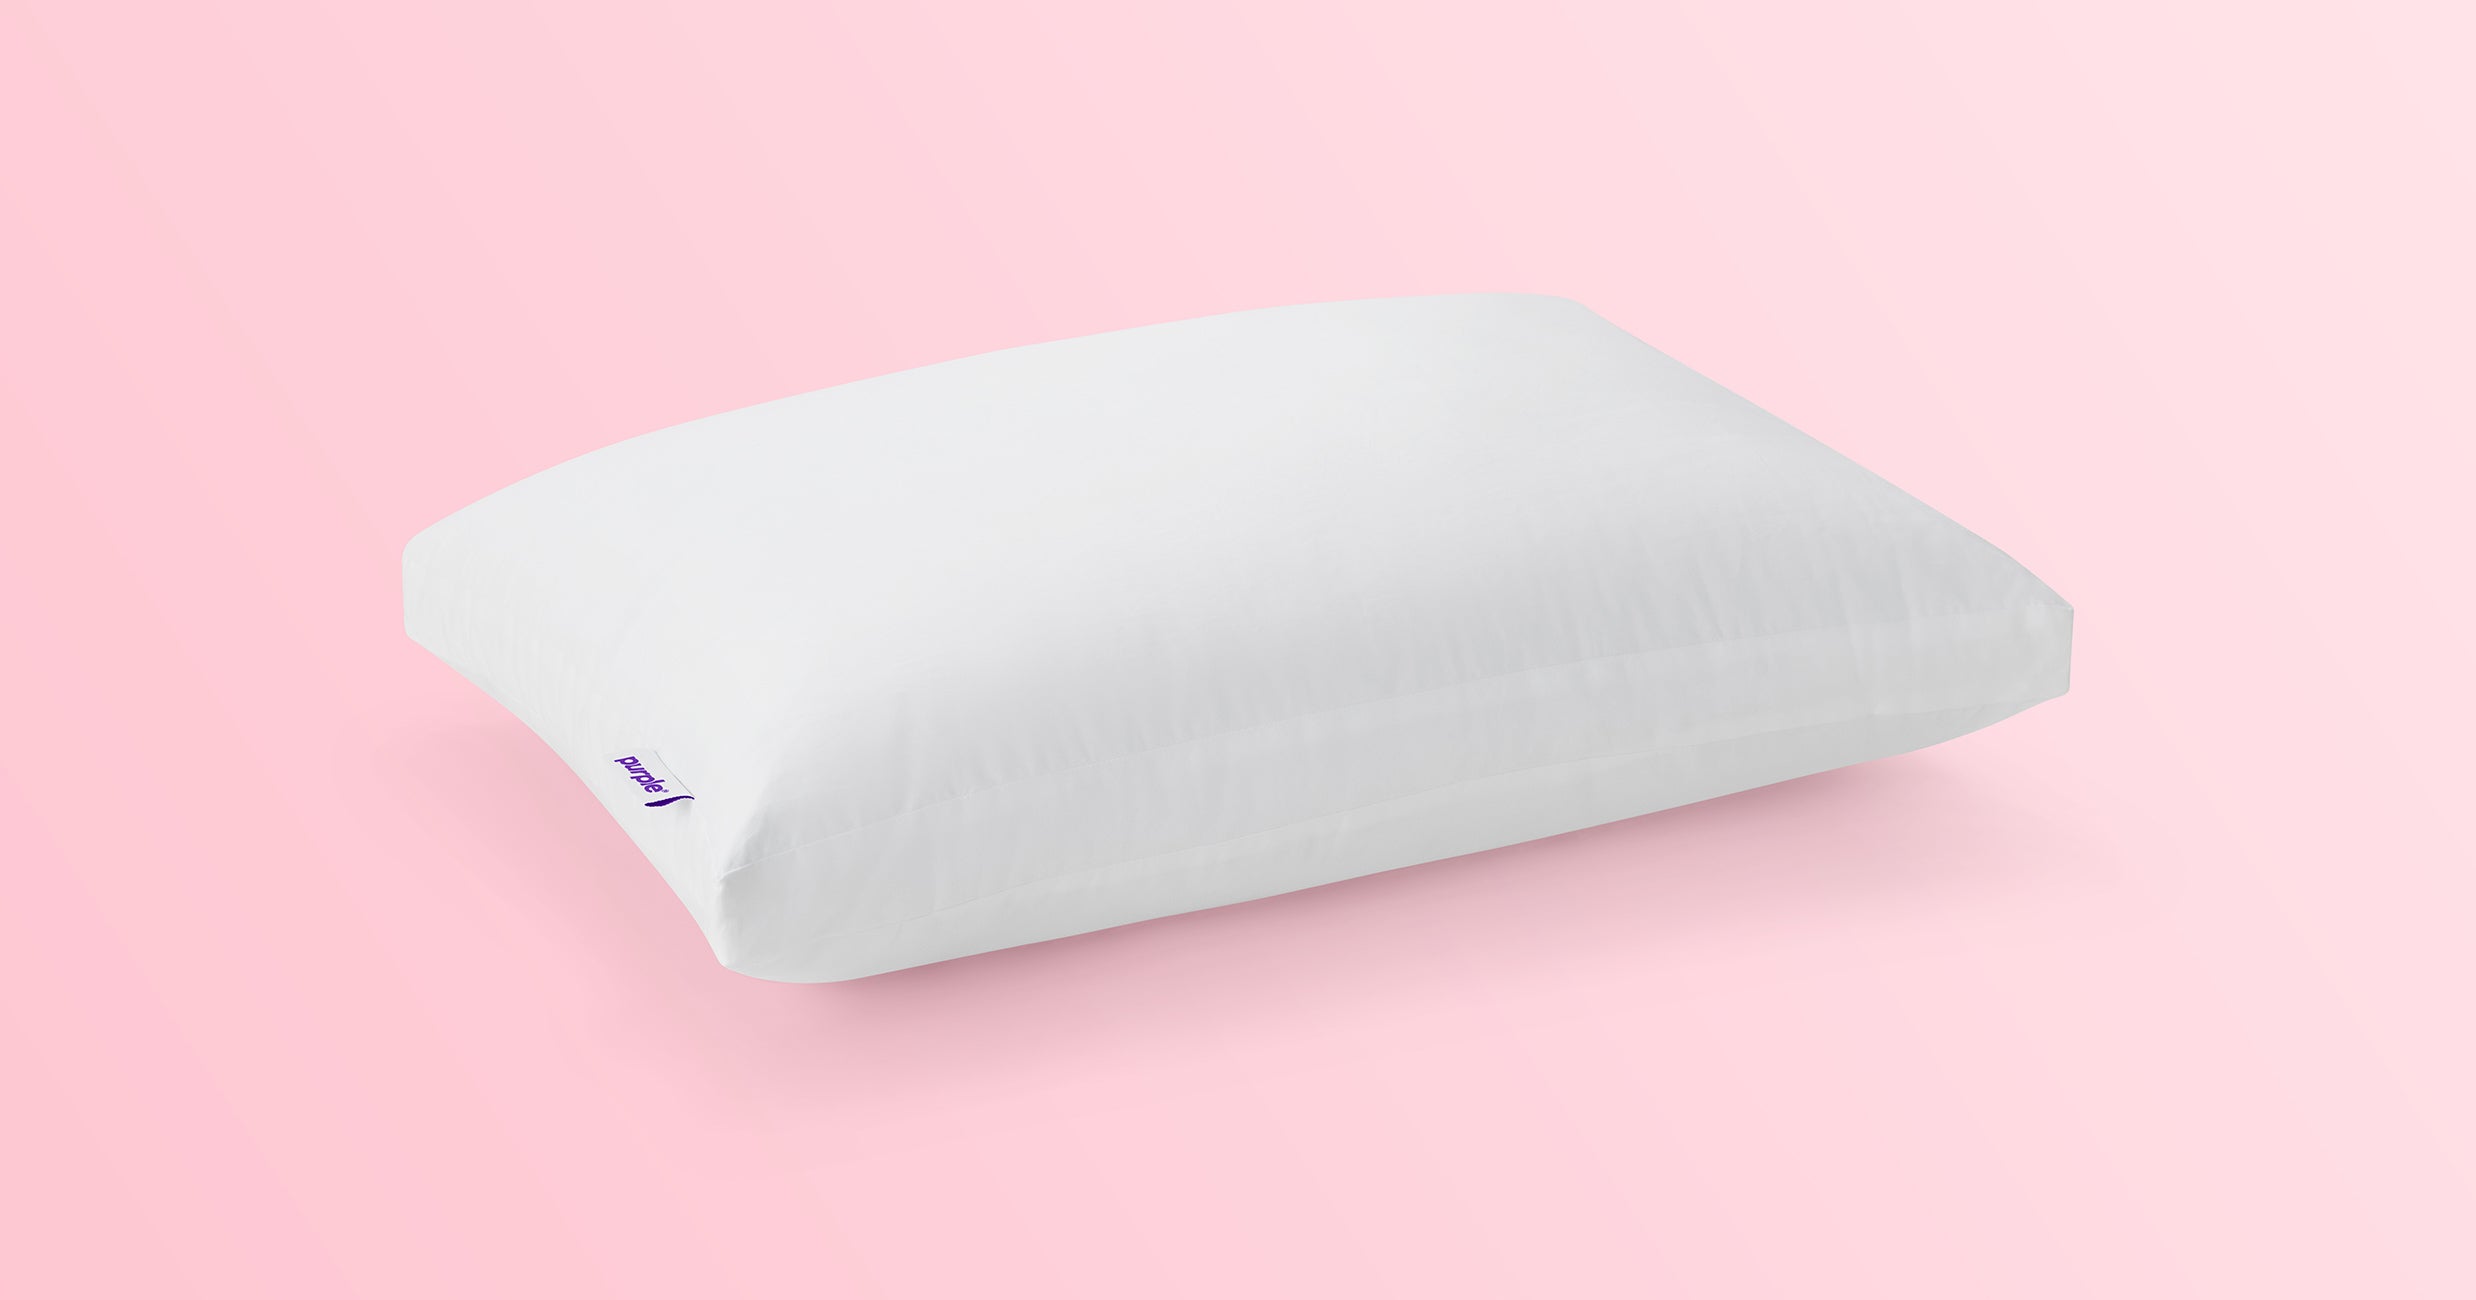 Purple® Cloud Pillow